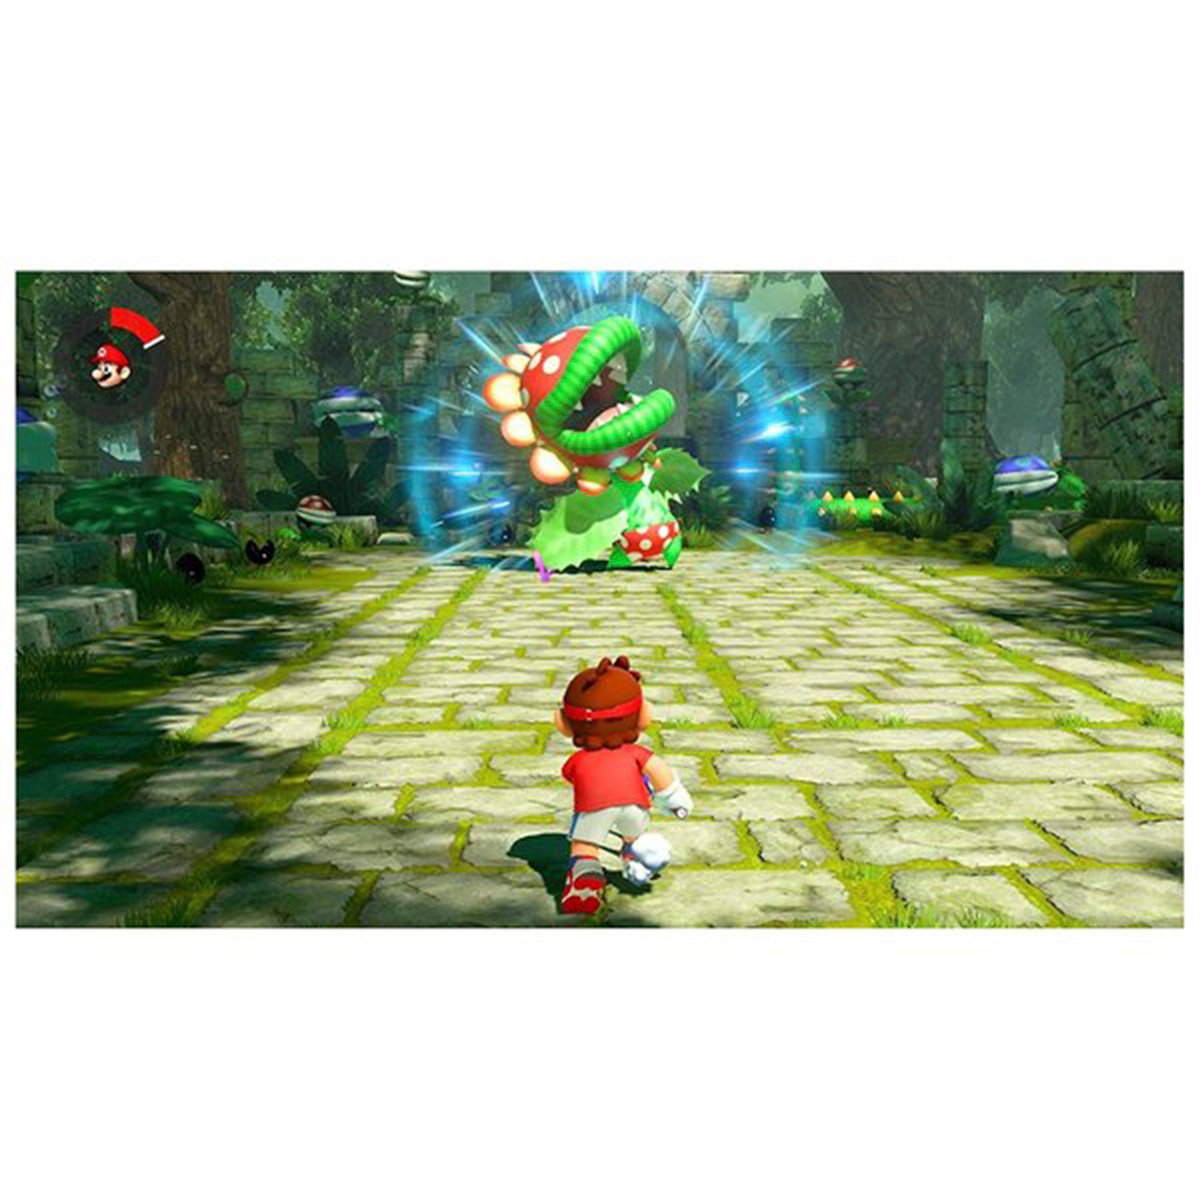 ماريو تنس إيسس - على Nintendo Switch